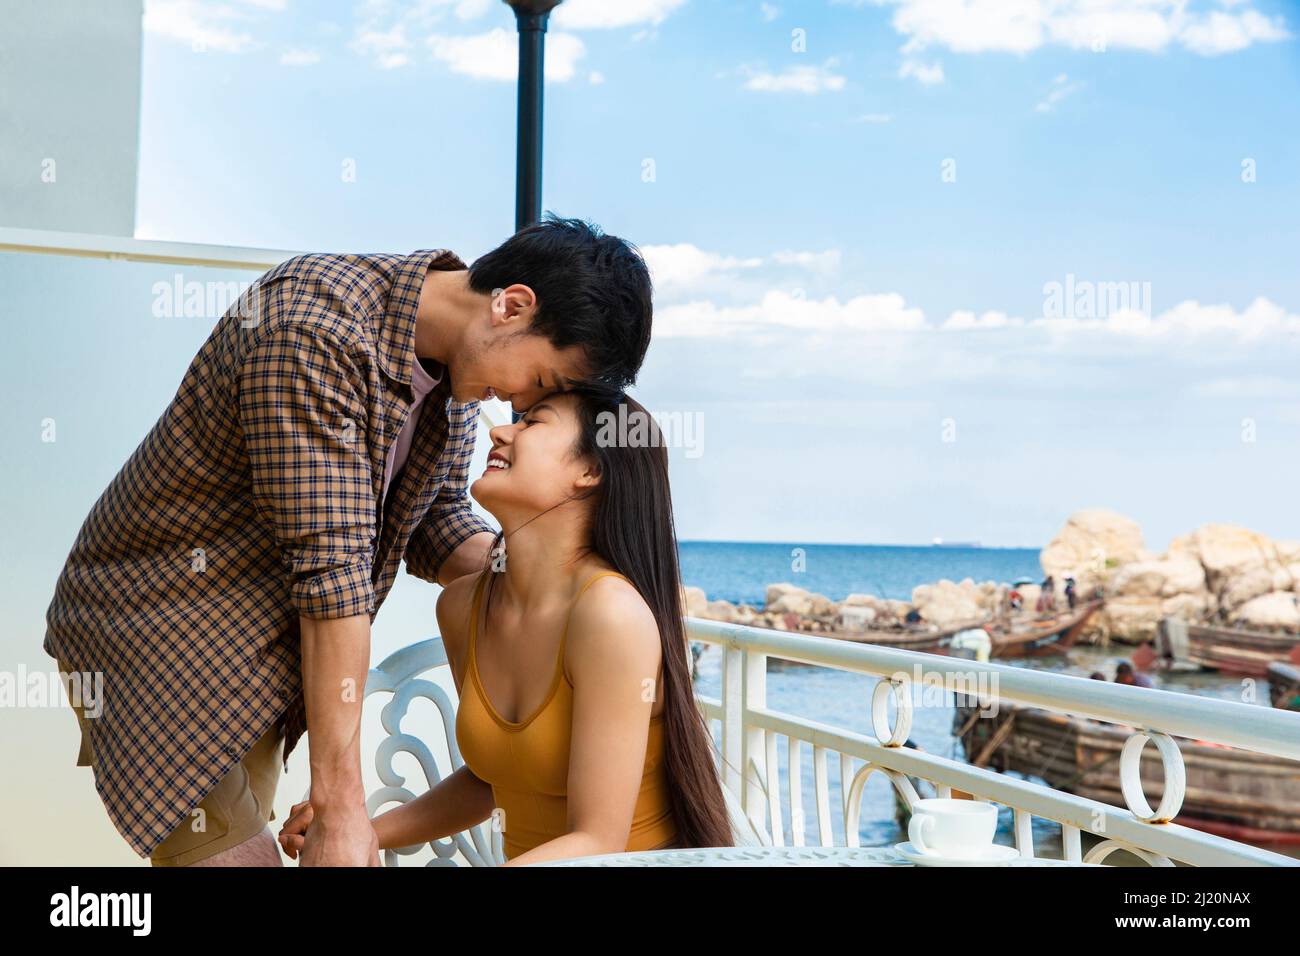 Amoureux qui sont tombés amoureux sur le balcon d'un hôtel de bord de mer - photo de stock Banque D'Images